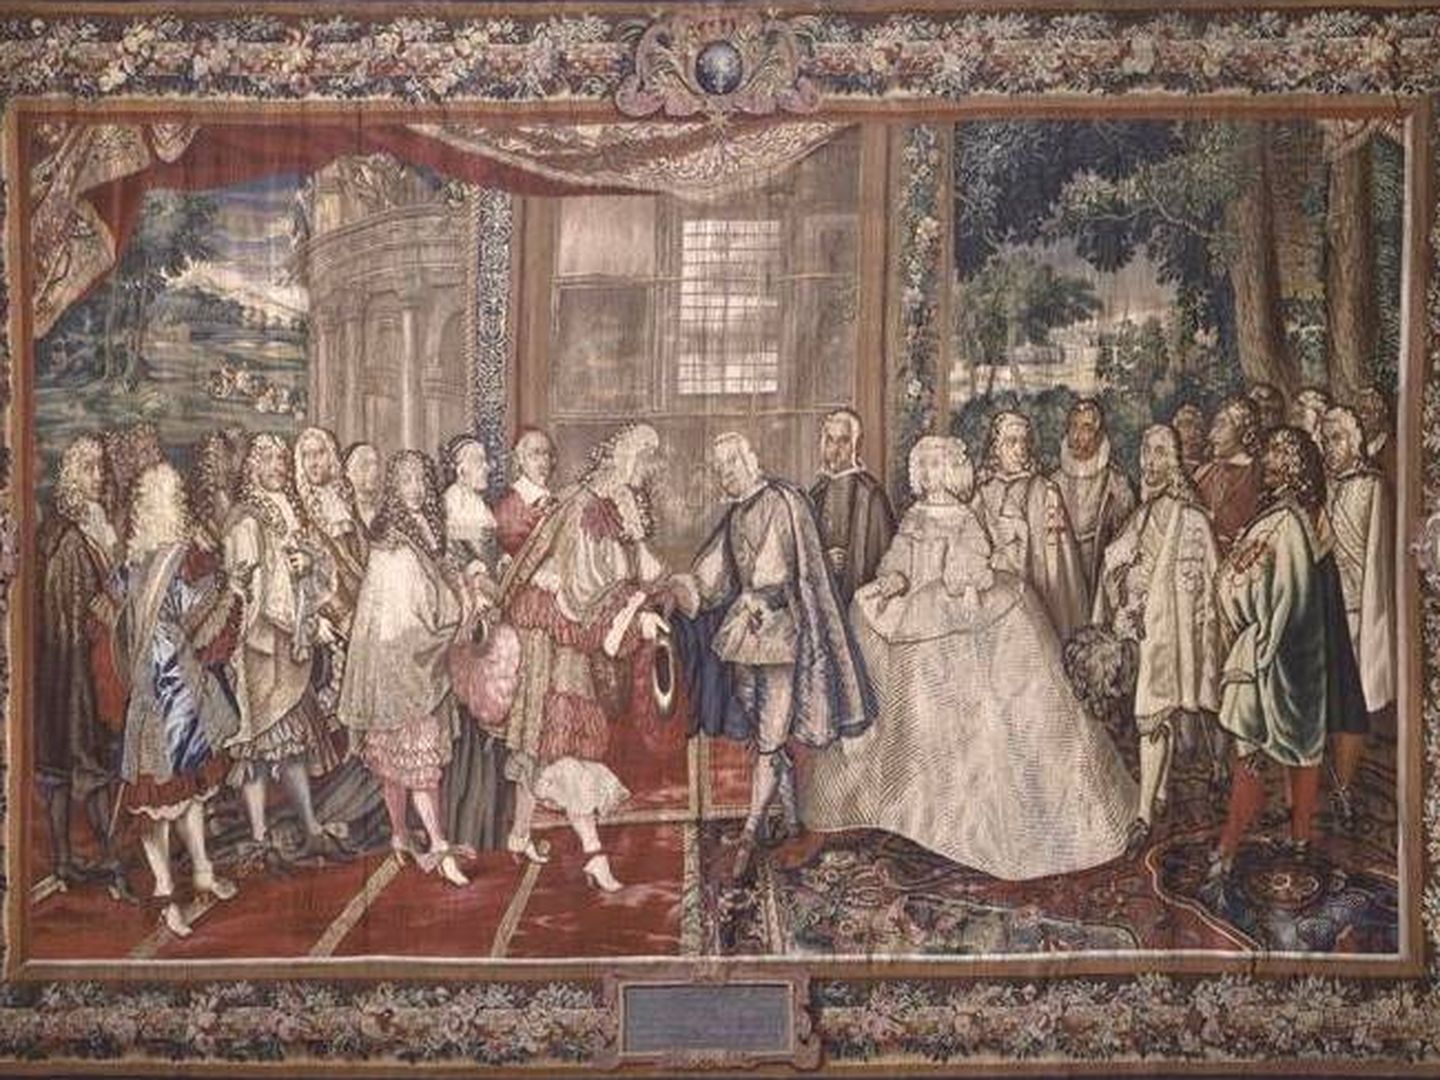 Encuentro de Felipe IV y Luis XIV a raíz del Tratado de los Pirineos.